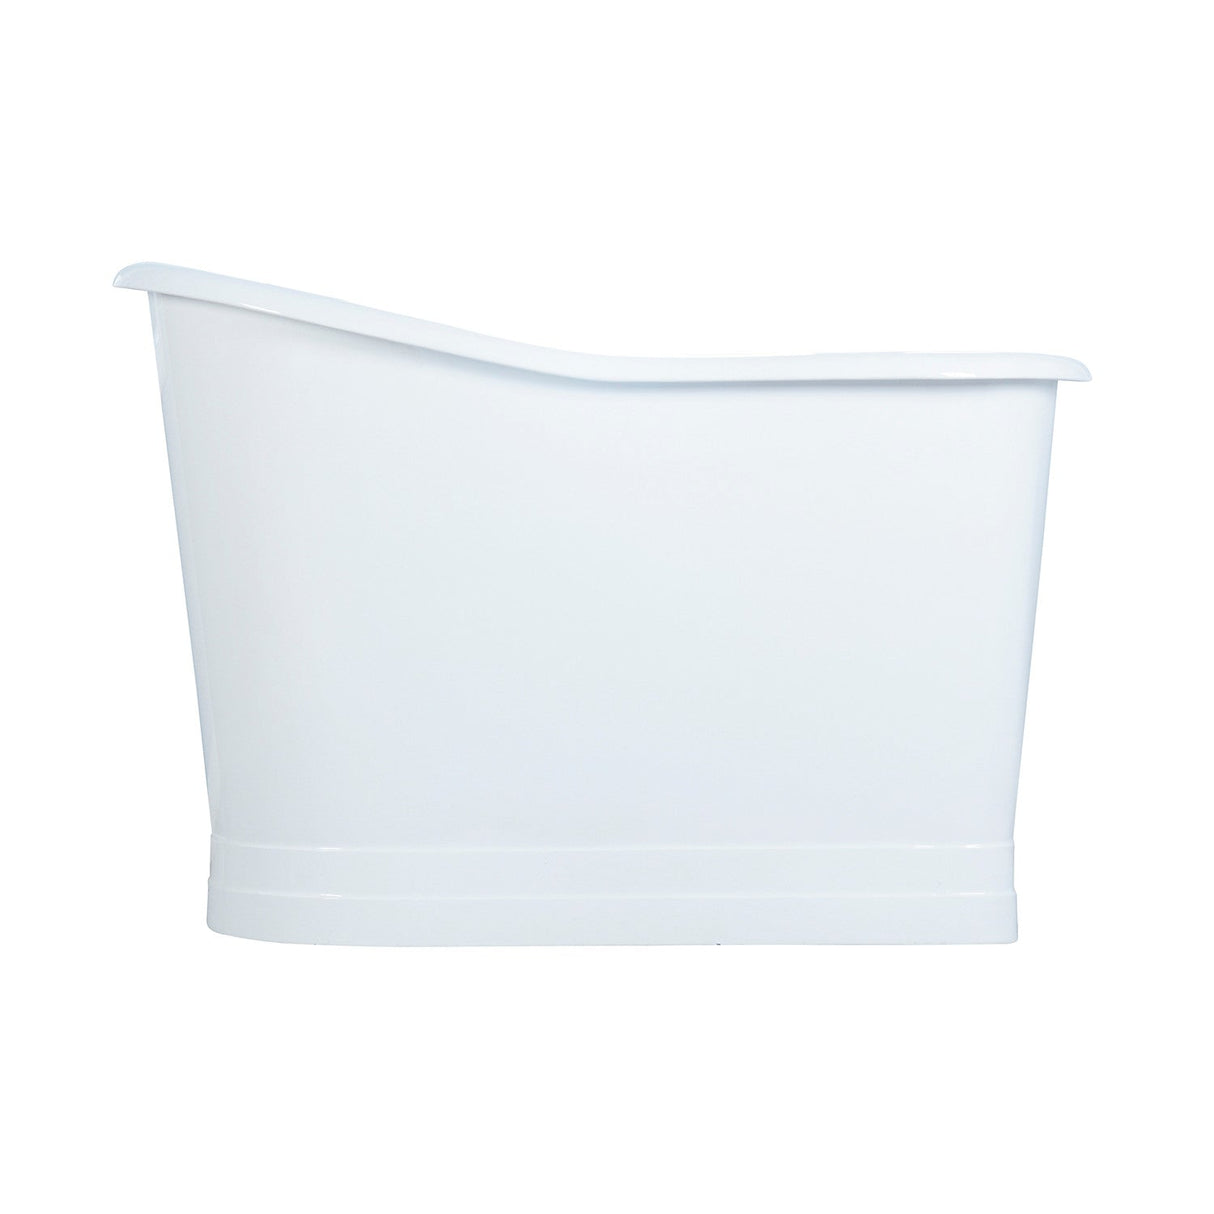 Aqua Eden VCTND513029 51-Inch Single Slipper Cast Iron Skirted Pedestal Tub, White